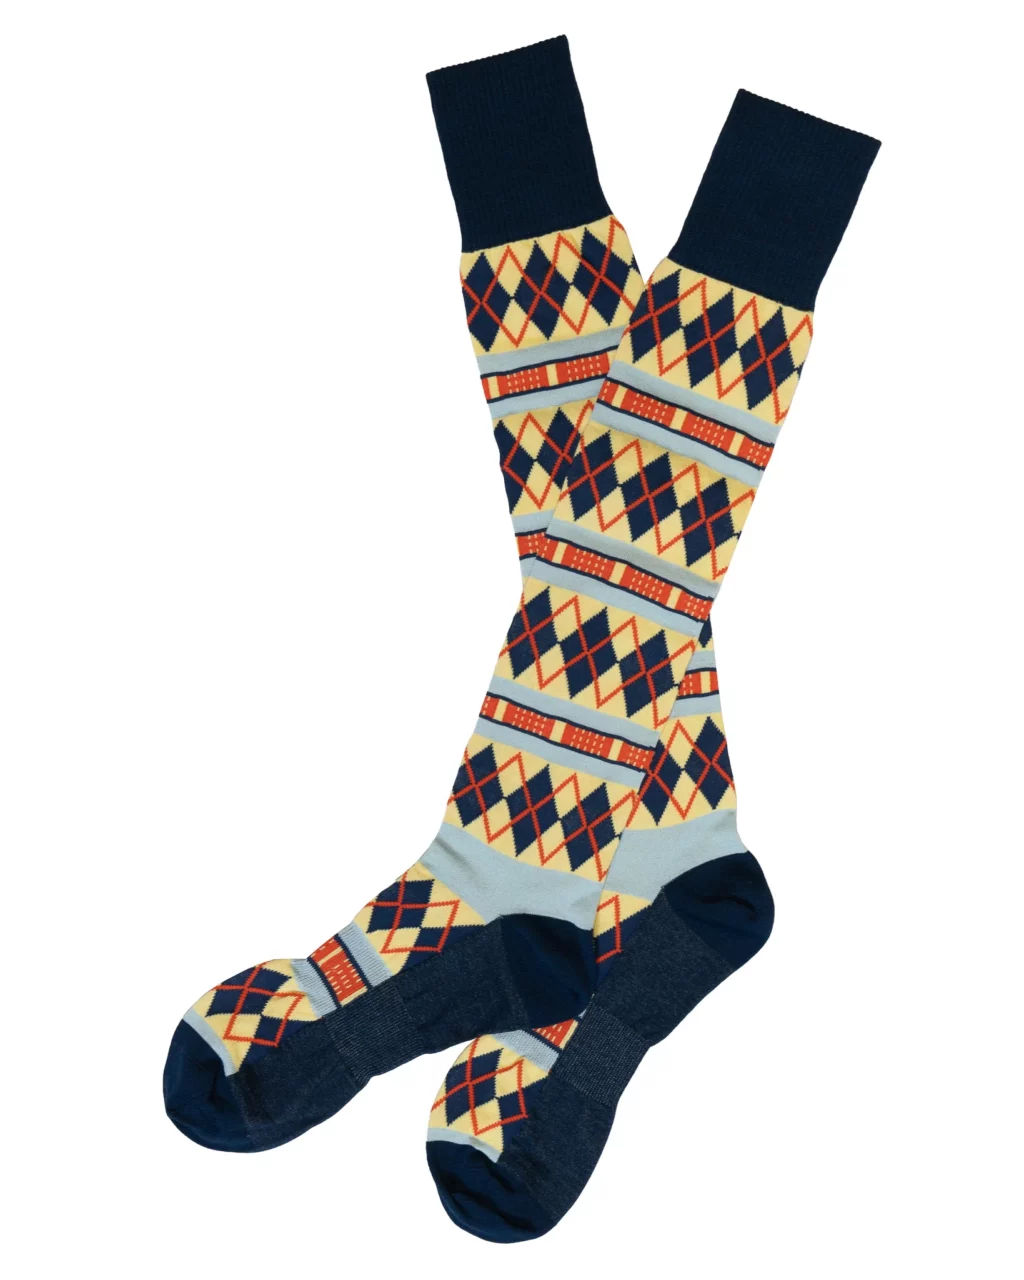 Gentleman’s Fairway Socks - Knee High by SJC. 5 pack - Fogey Unlimited